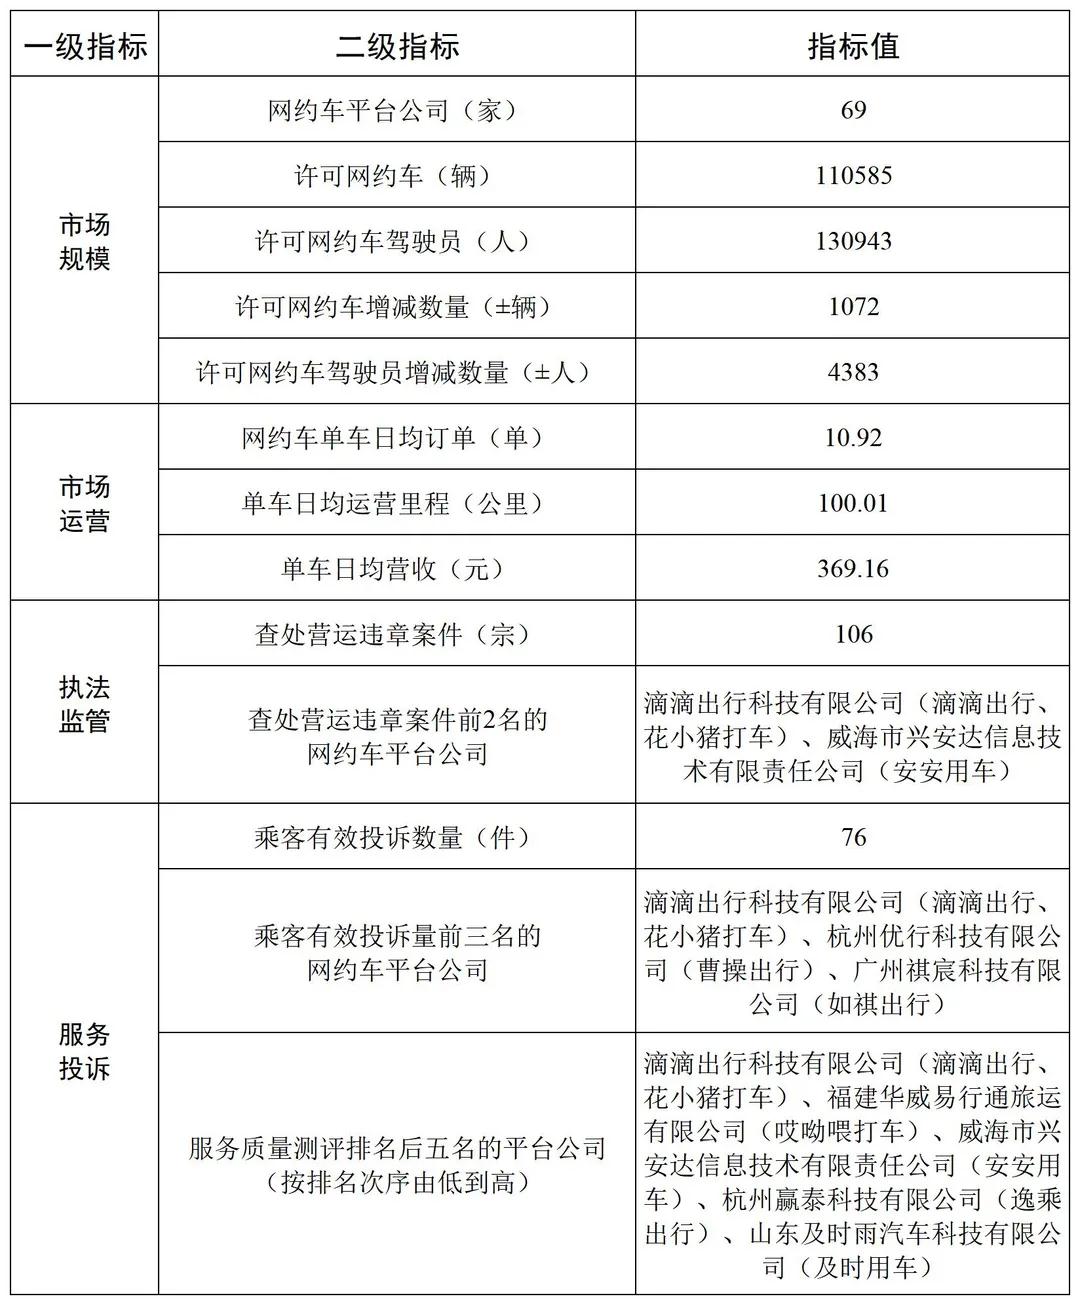 广州市网络预约出租汽车行业市场运行管理监测信息统计表